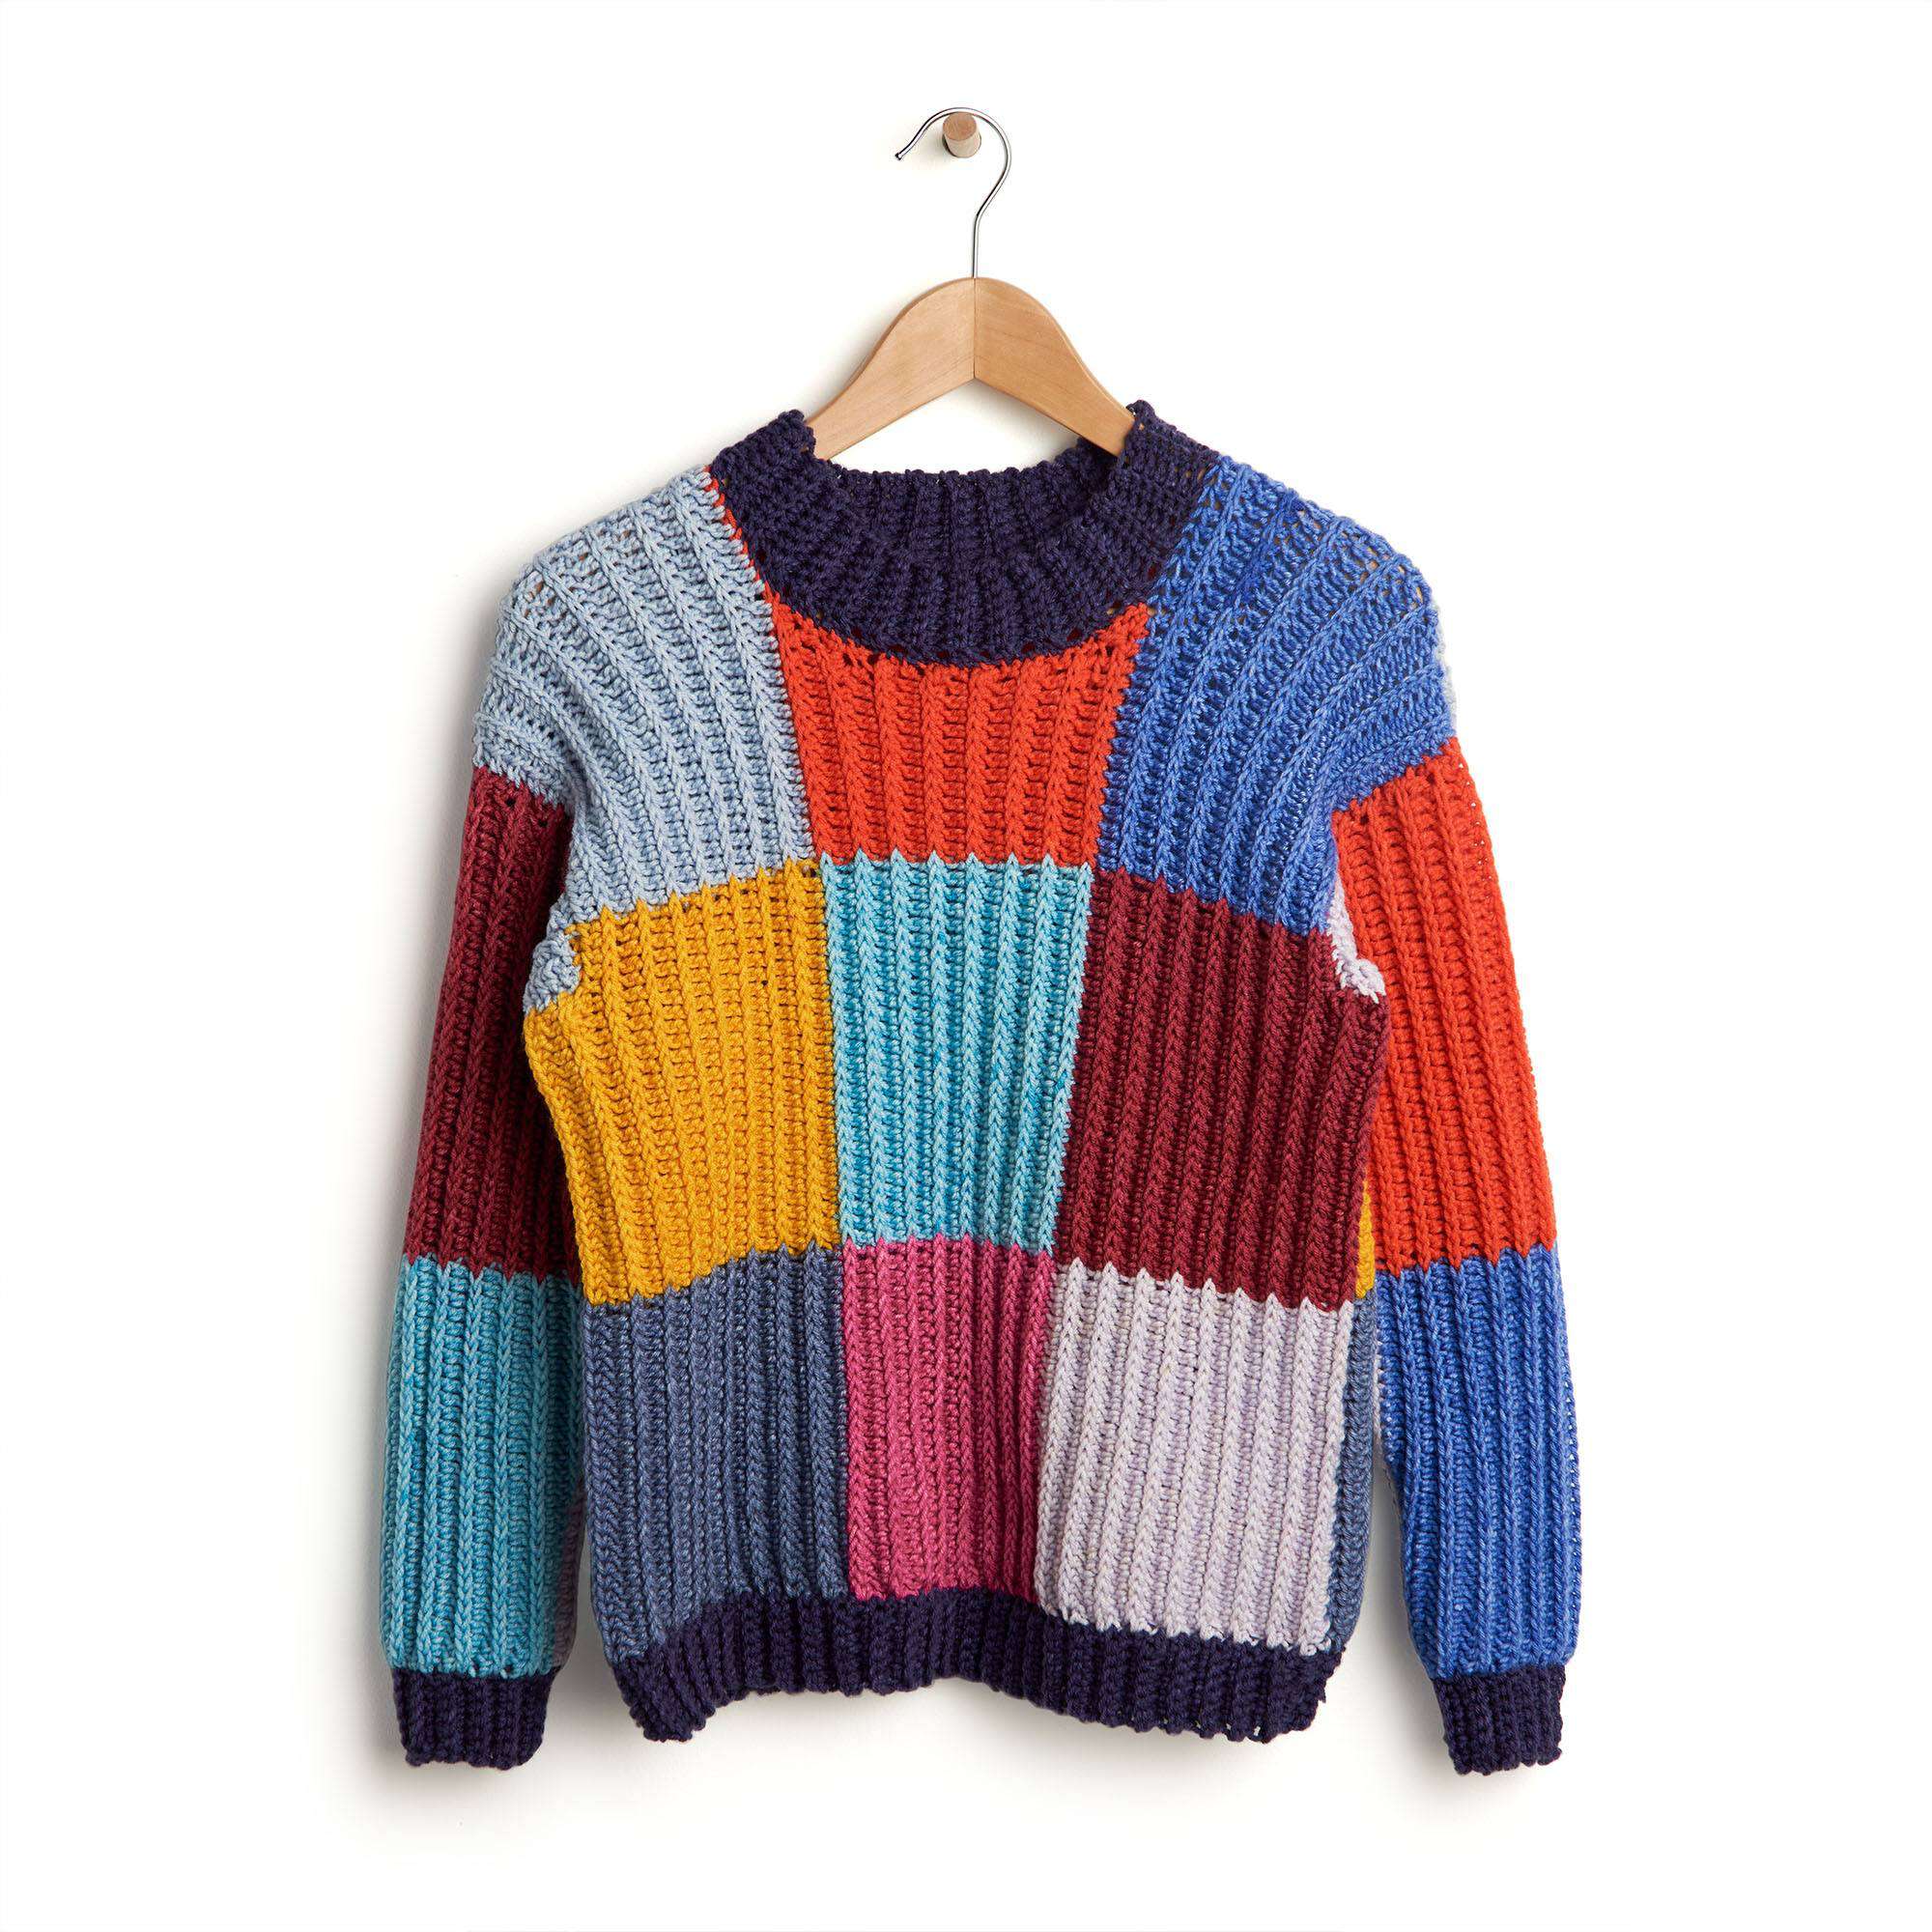 Free Caron Boxy Checks Crochet Sweater Pattern | Yarnspirations